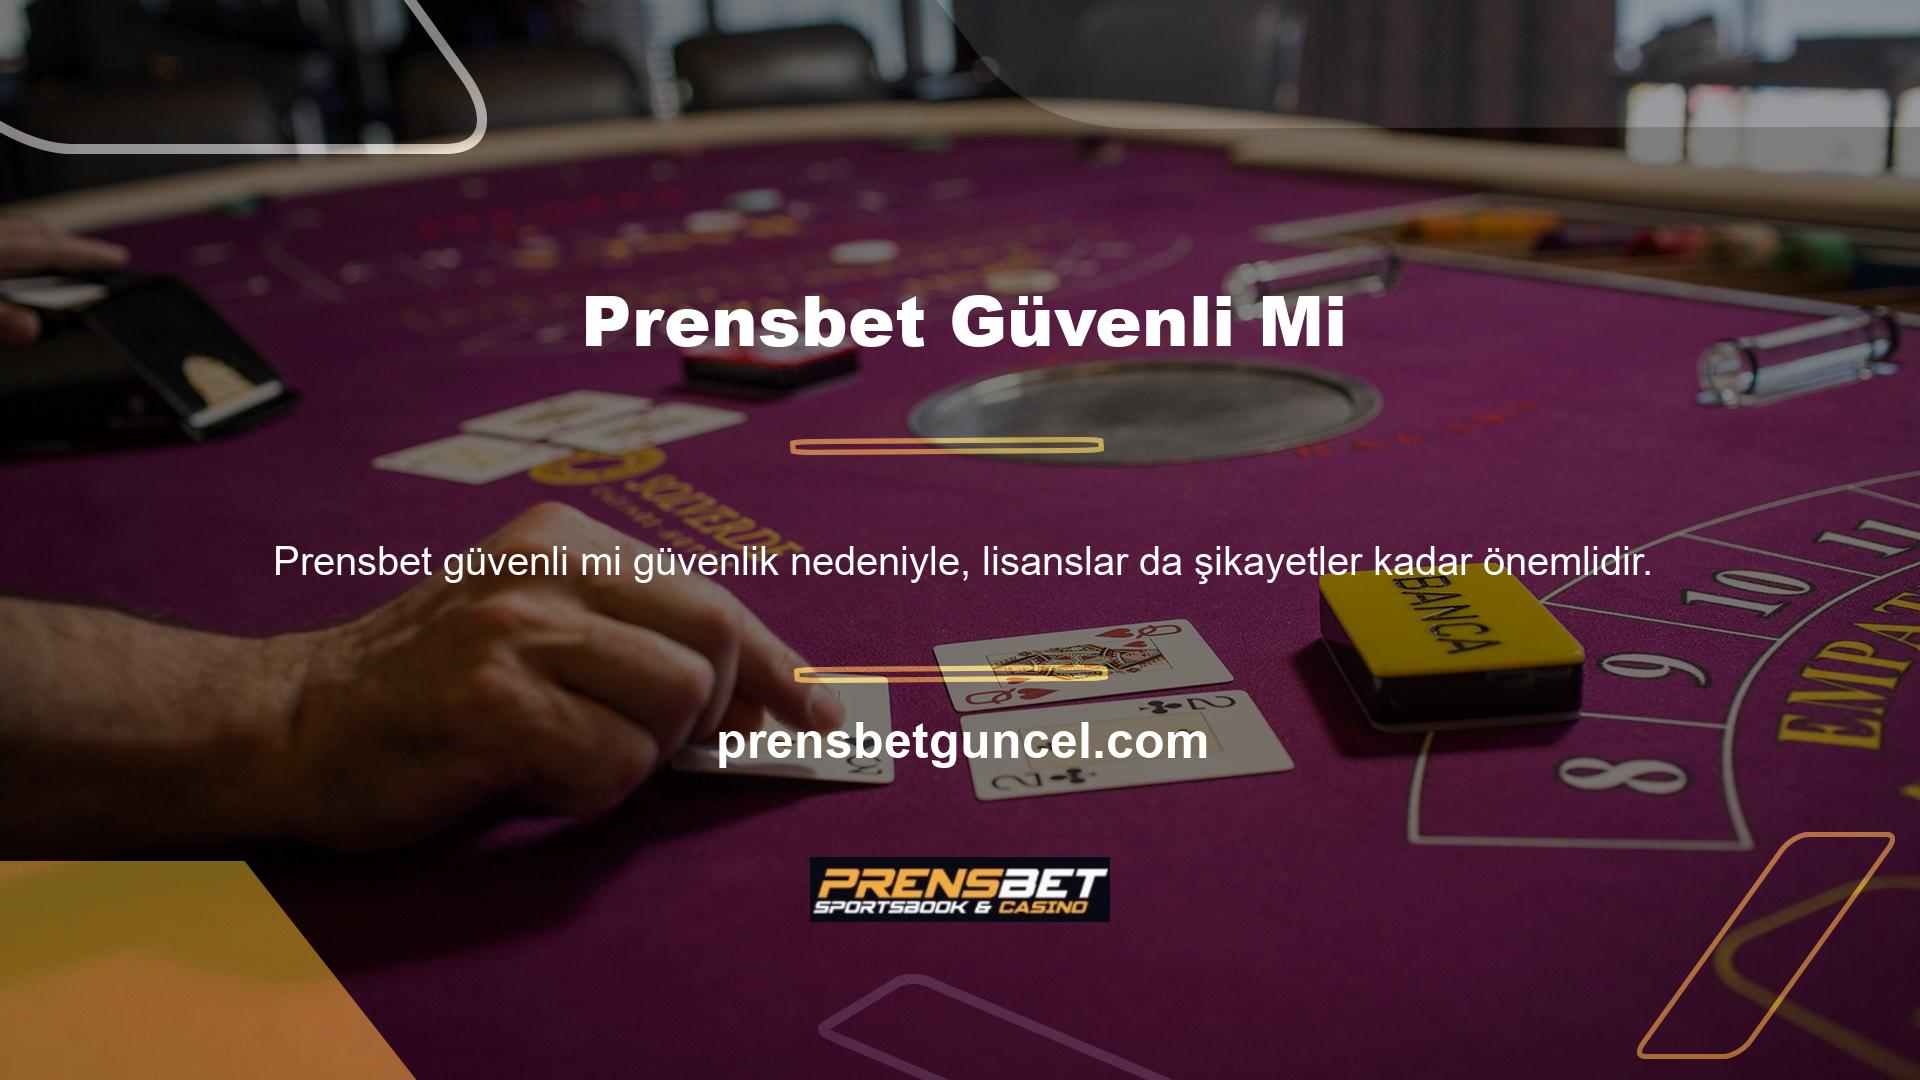 Online casino sitesi Prensbet, oyunculara bu sorunun cevabını web sitesindeki lisans bilgileri aracılığıyla sunmaktadır